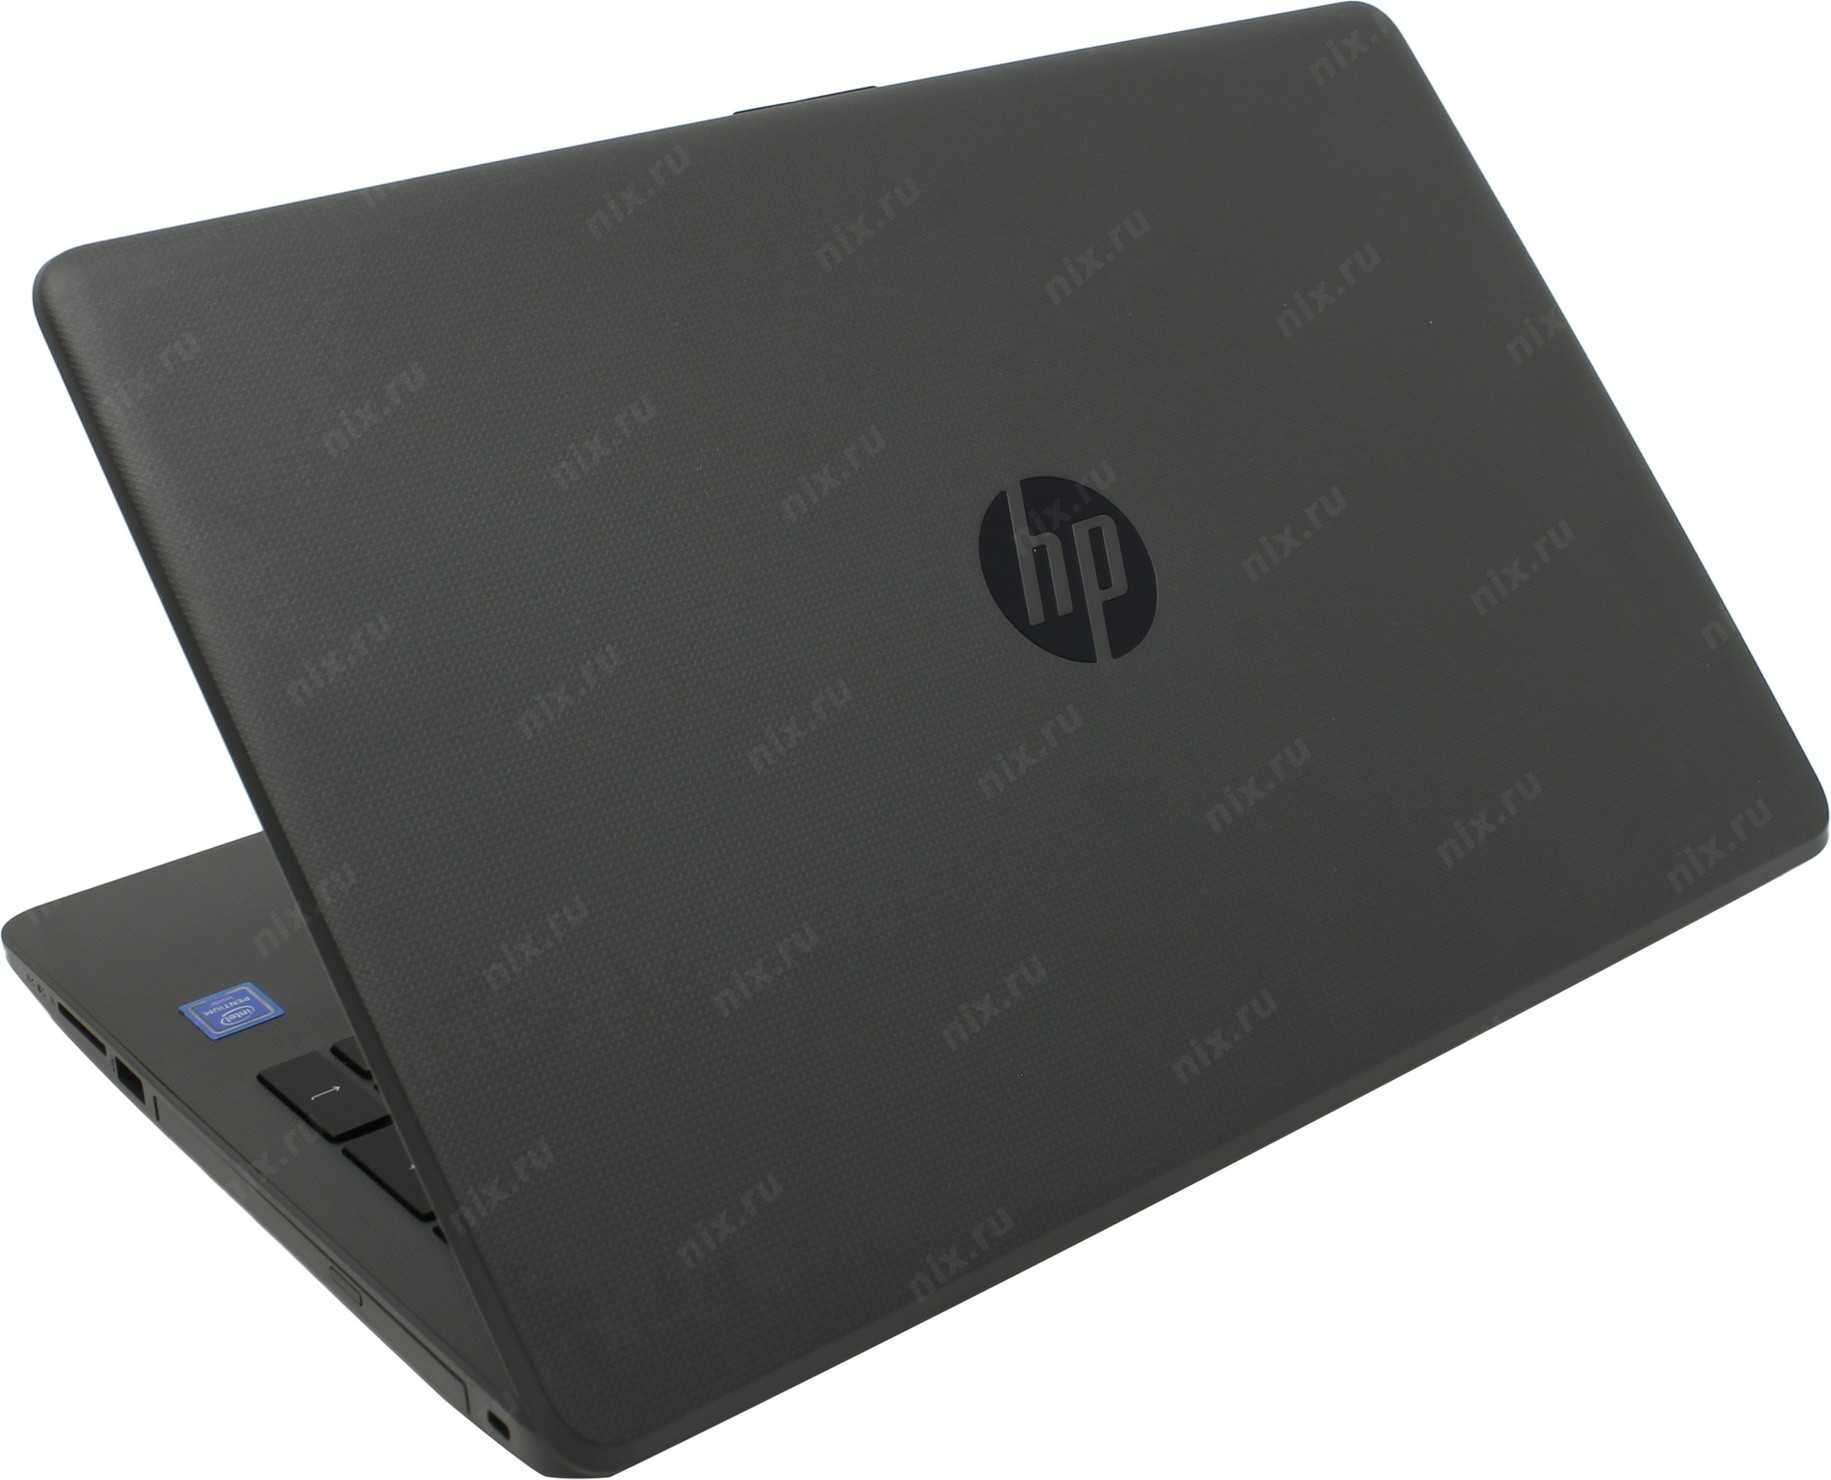 Ноутбук hp 250 g6 (2sx72ea) — купить, цена и характеристики, отзывы